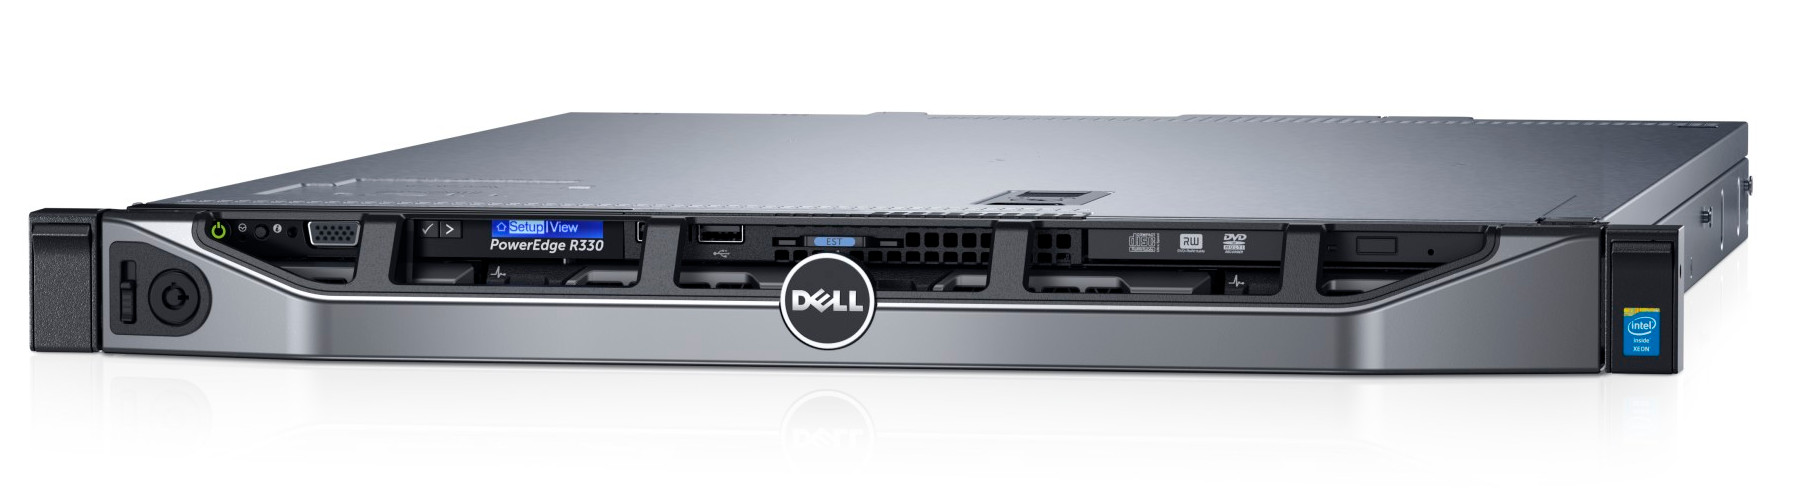 Сервер Dell PowerEdge R330 E3-1220v5 (3.0GHz, 4C), 8GB (1x8GB) UDIMM, No HDD (up to 4x3.5"), PERC H330, DVD+/-RW, Broadcom 5720 DP 1Gb LOM, iDRAC8 Ent